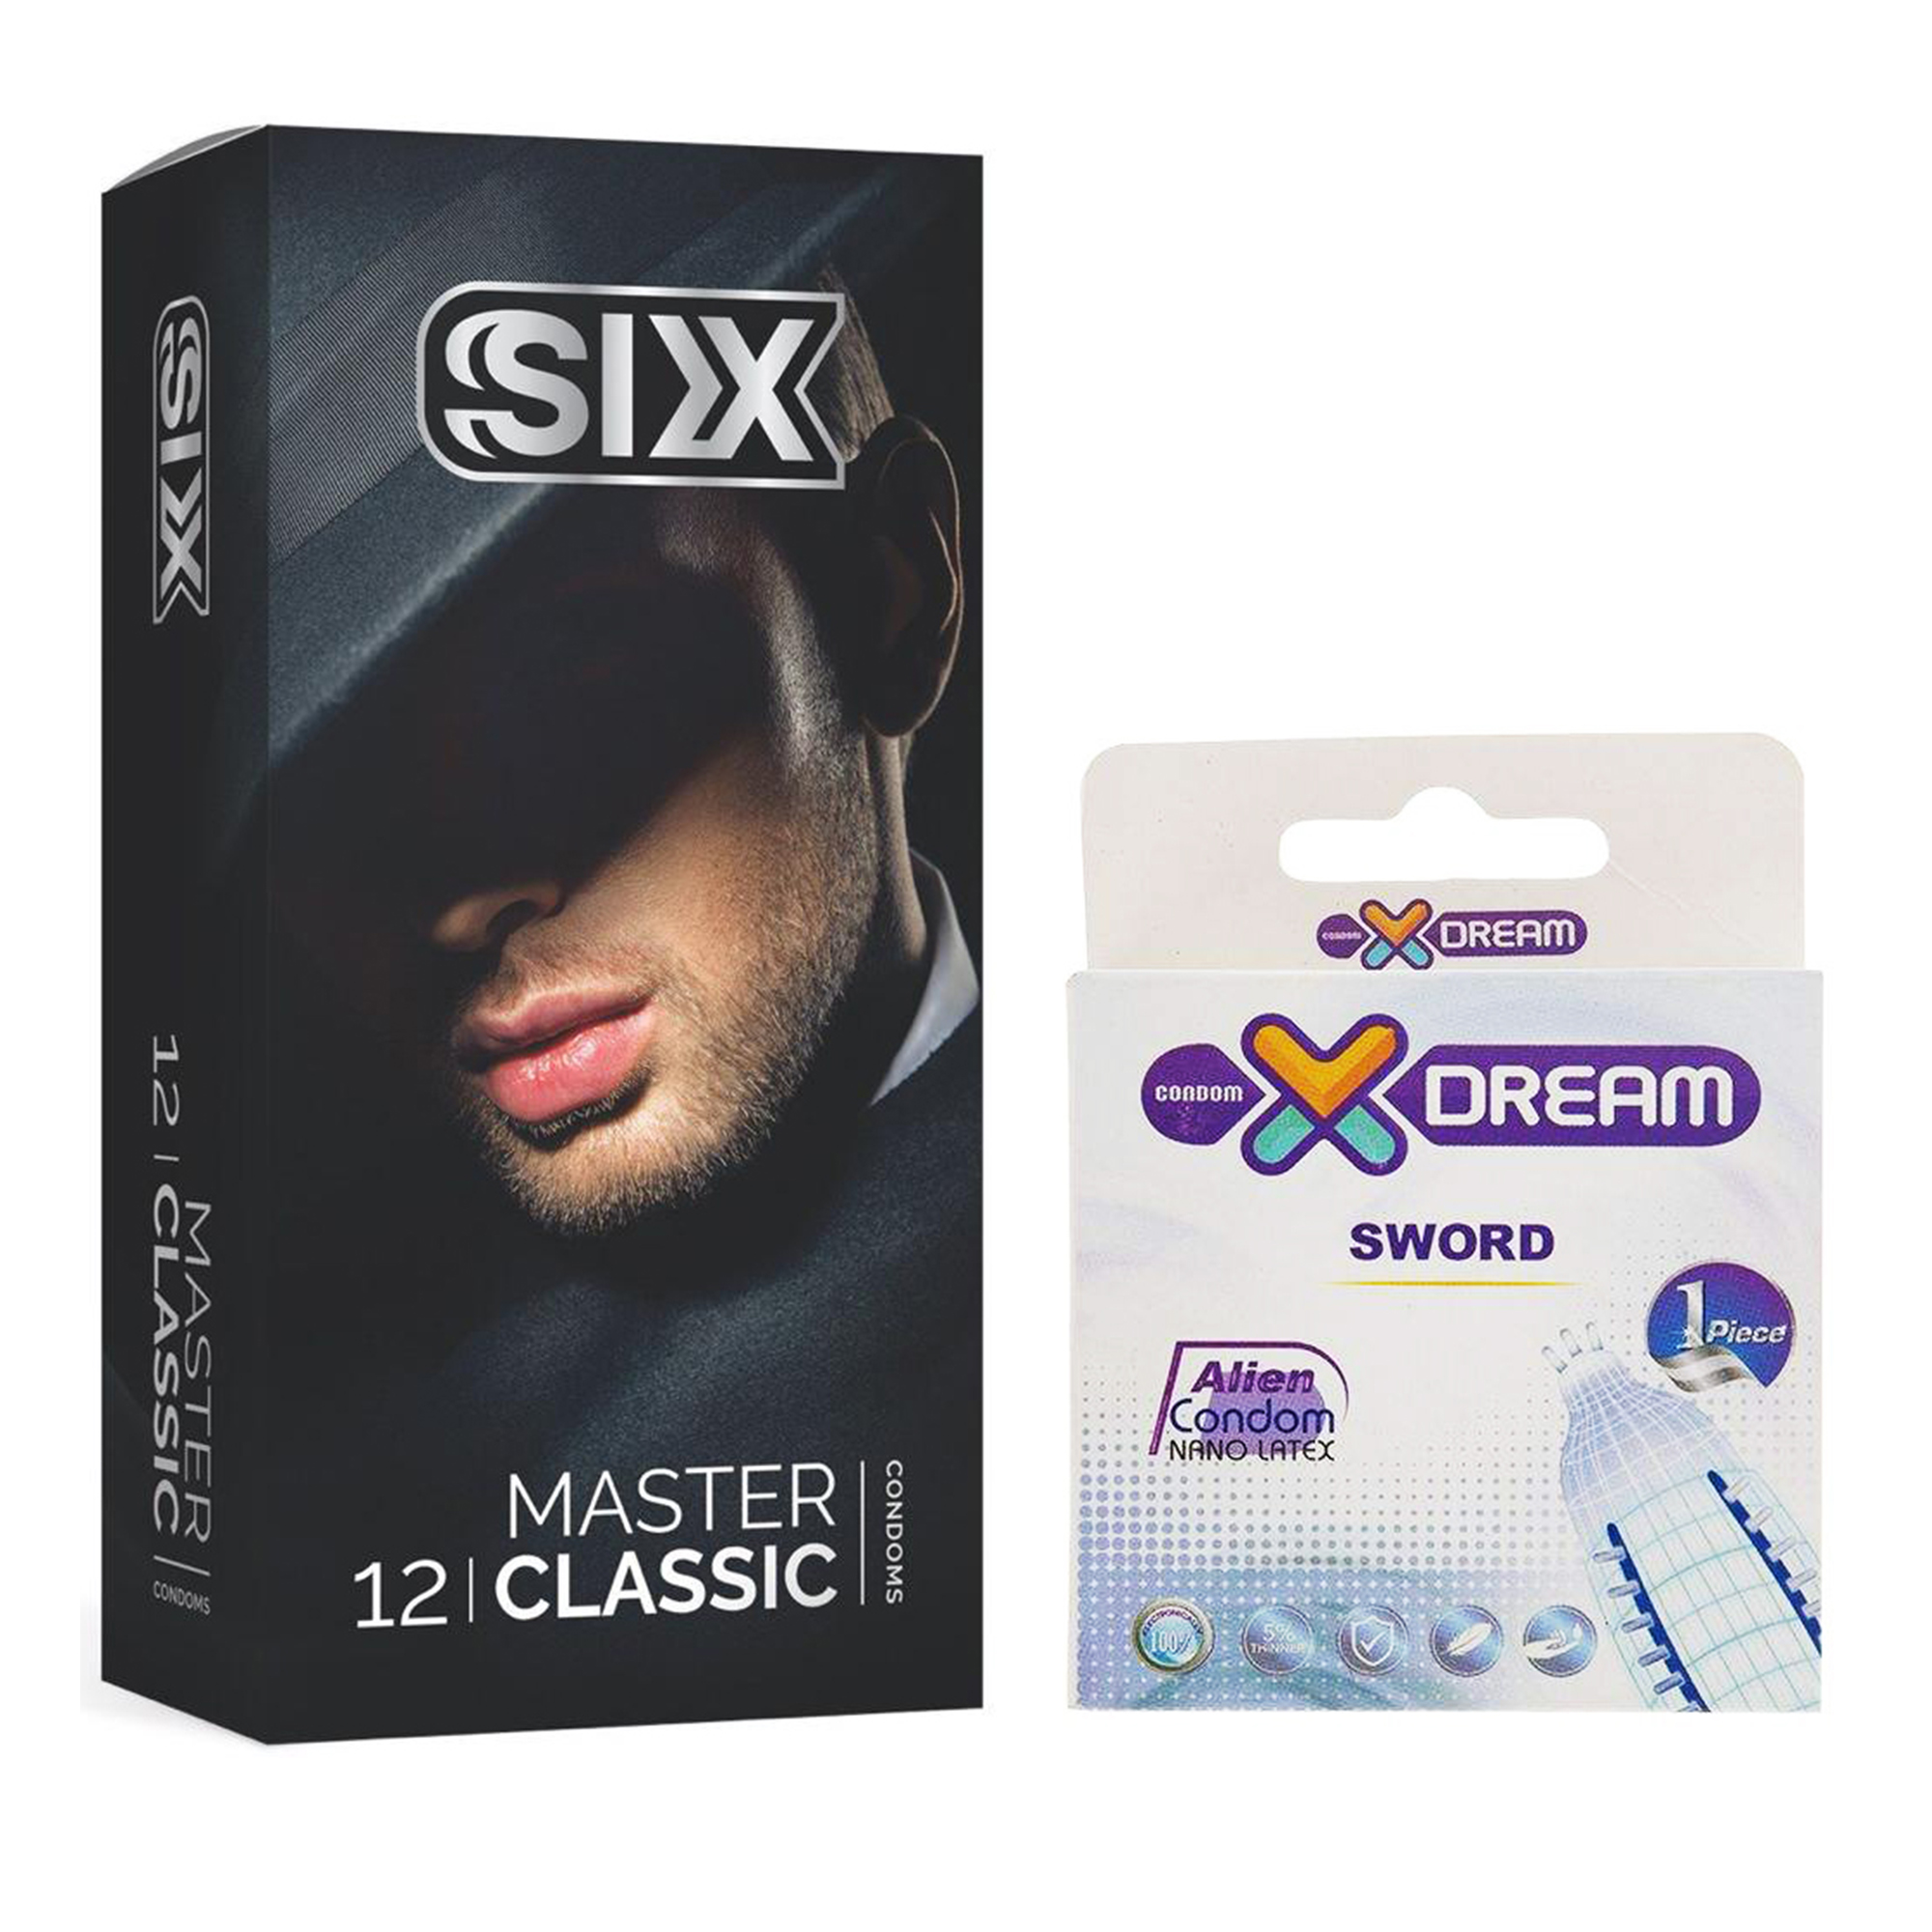 کاندوم سیکس مدل Master Classic بسته 12 عددی به همراه کاندوم ایکس دریم مدل Sword